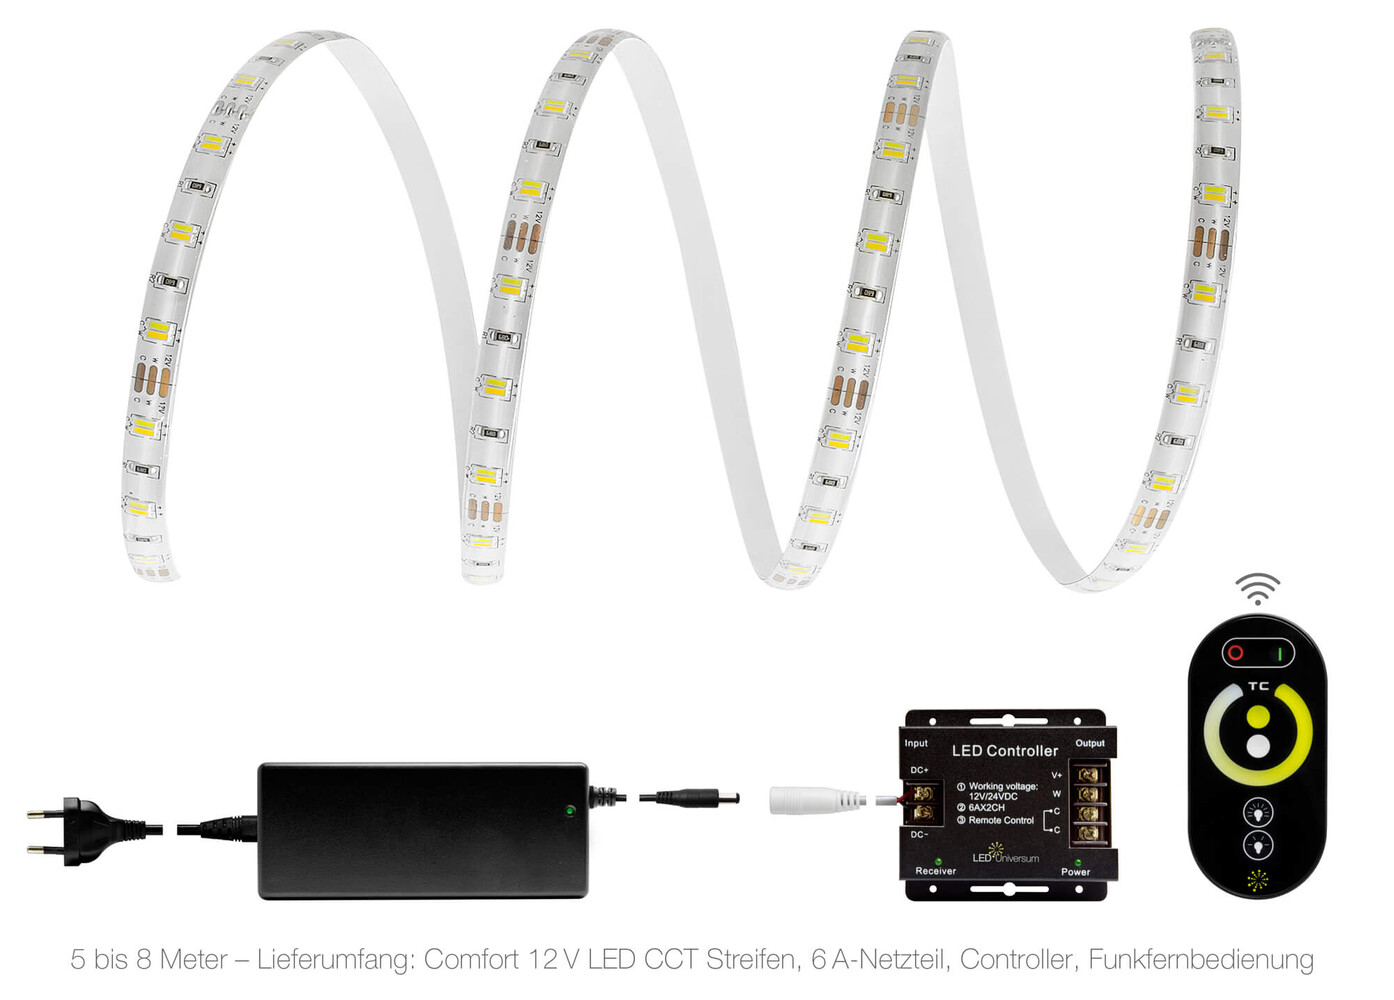 Ein hochqualitativer, langlebiger LED-Streifen von LED Universum mit integriertem Controller und Fernbedienung